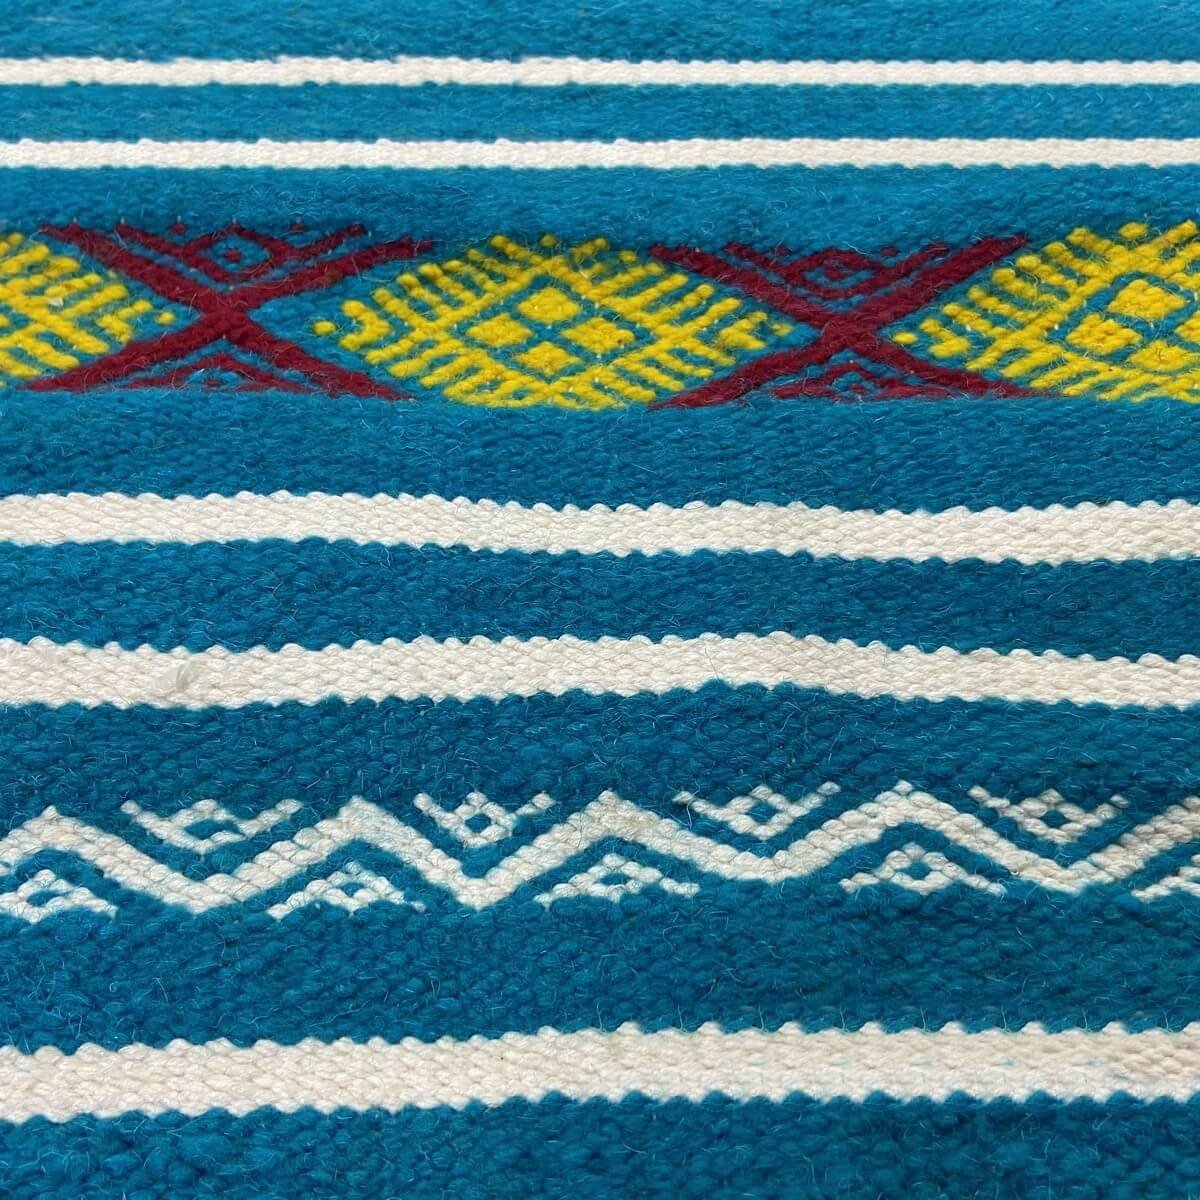 tappeto berbero Tappeto Kilim Emder 107x140 Turchese/Giallo/Rosso (Fatto a mano, Lana) Tappeto kilim tunisino, in stile marocchi